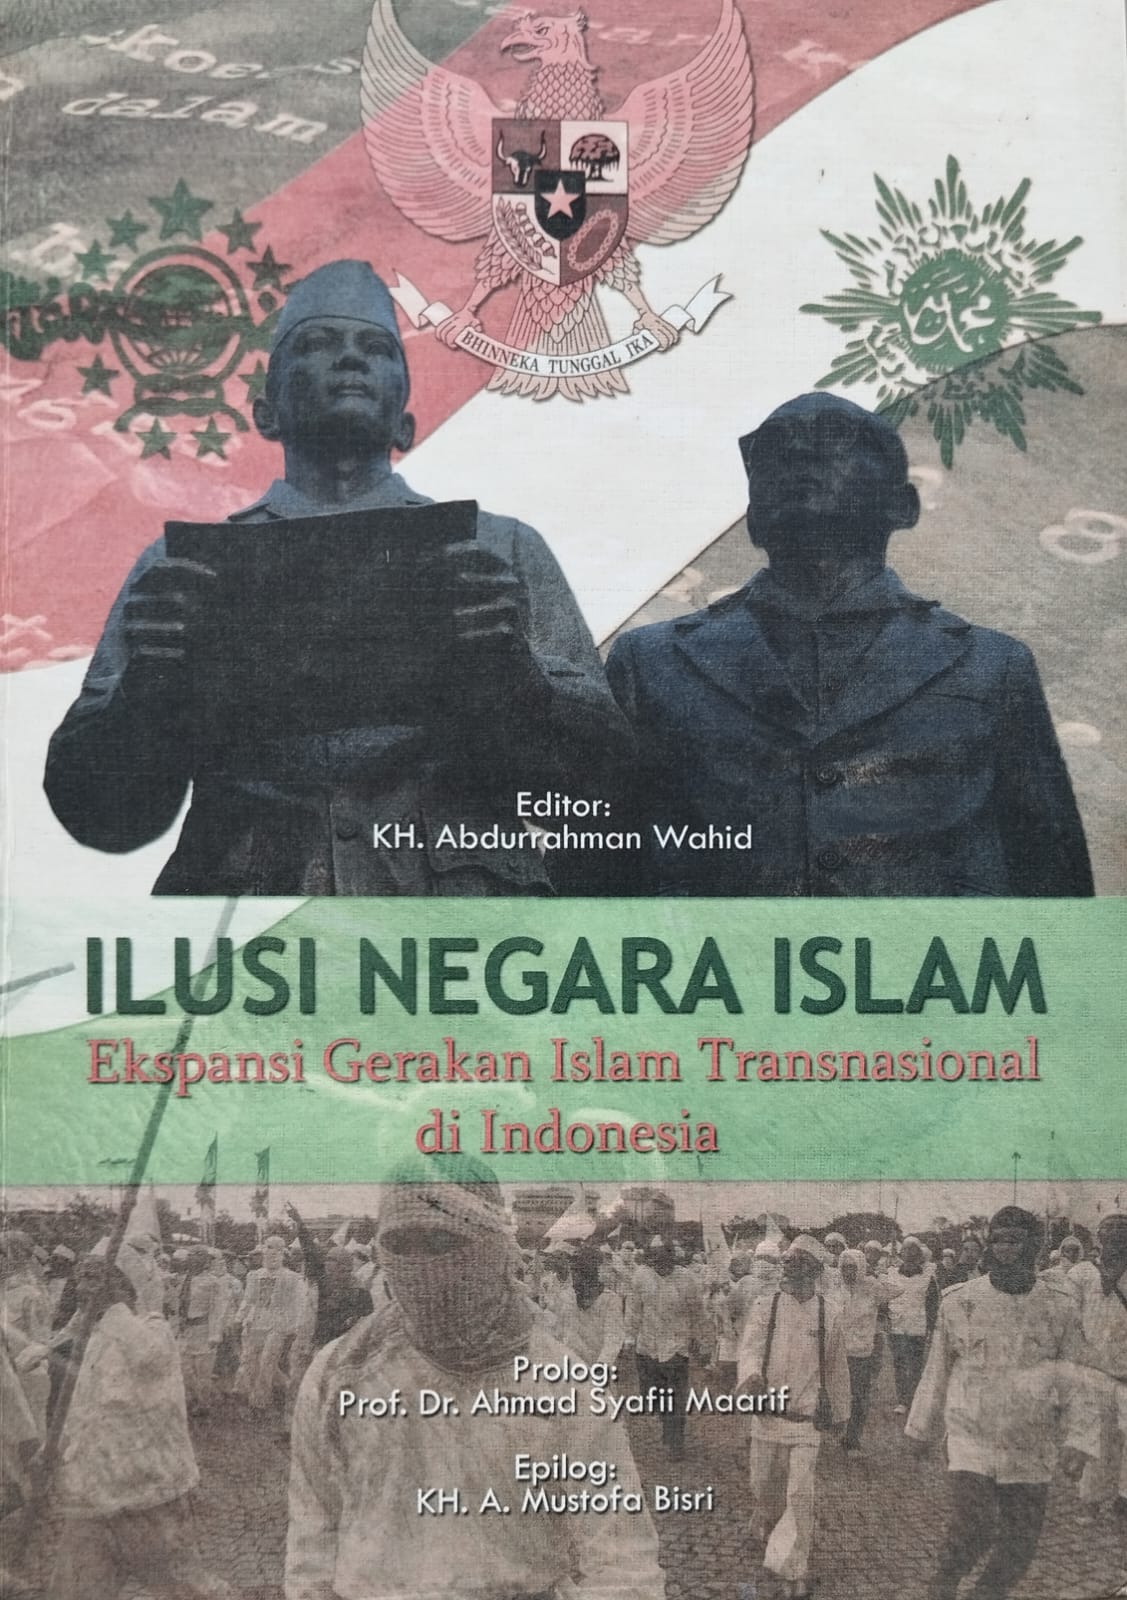 Ilusi Negara Islam: Ekspansi Gerakan Transnasional di Indonesia